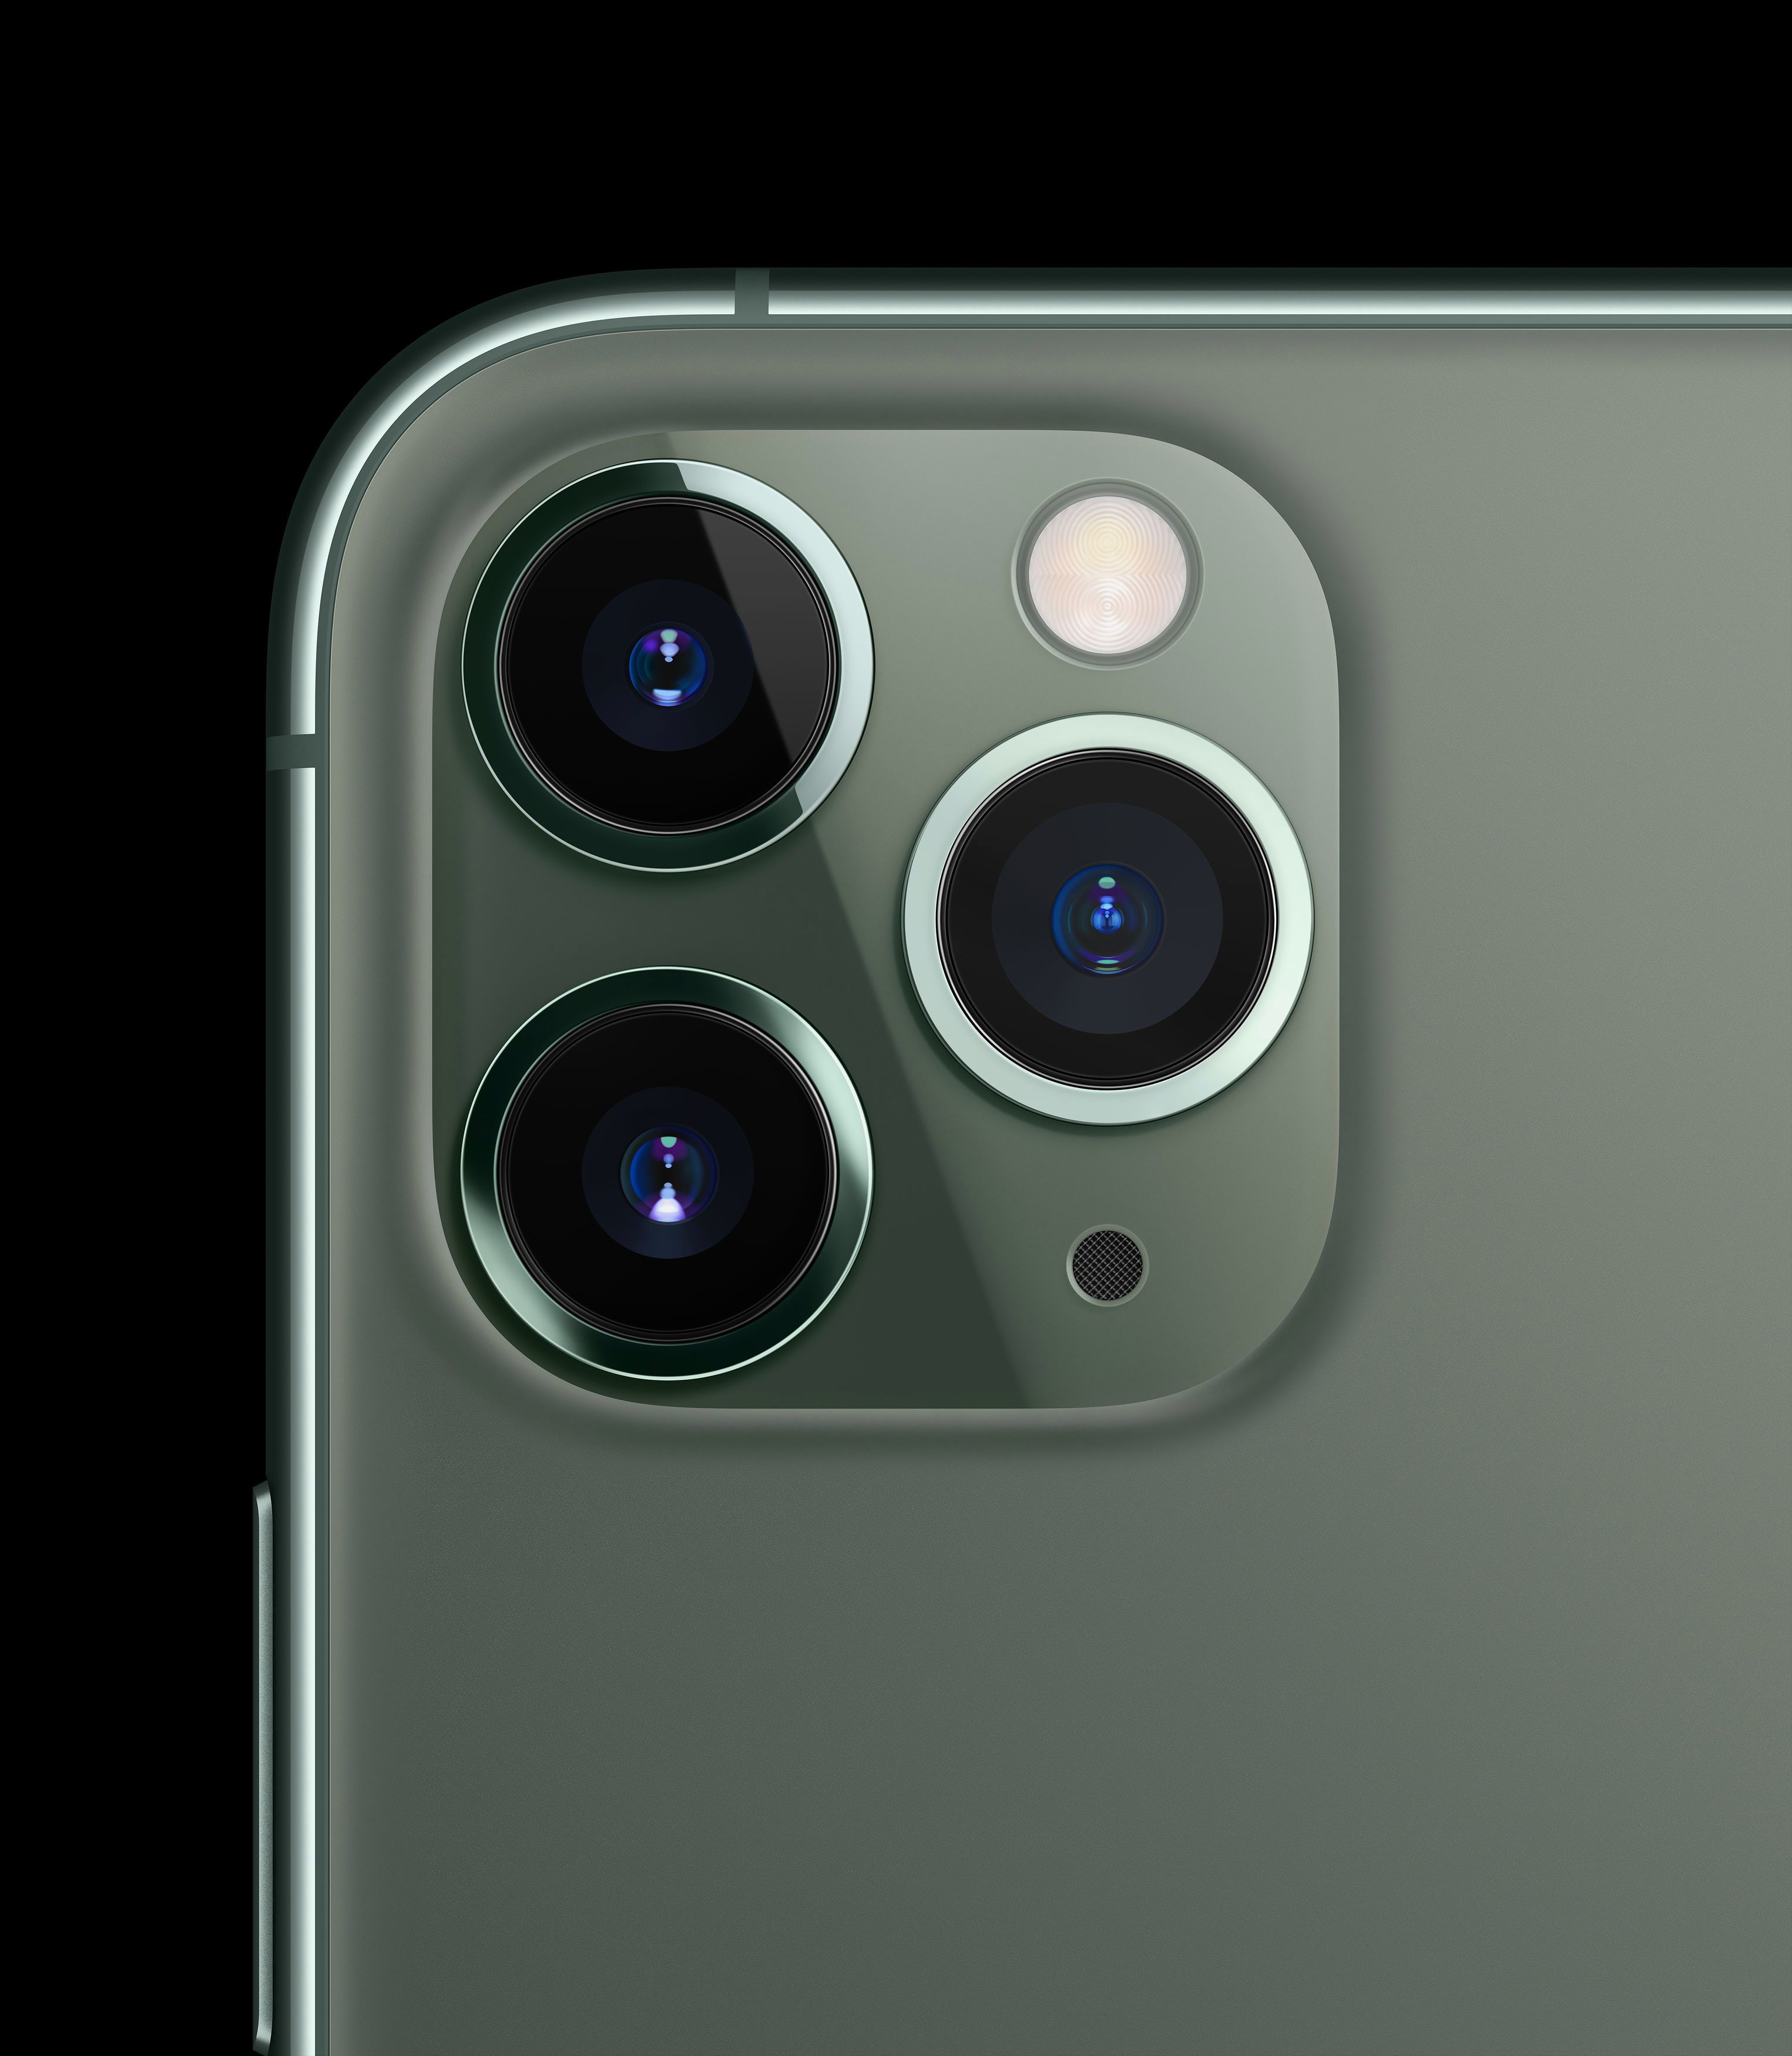         Das Design des iPhone 11 Pro verfügt über eine 12-Megapixel-Tele-Kamera mit einer größeren Blende von 1: 2,0, einer Brennweite von 52 mm und einem OIS